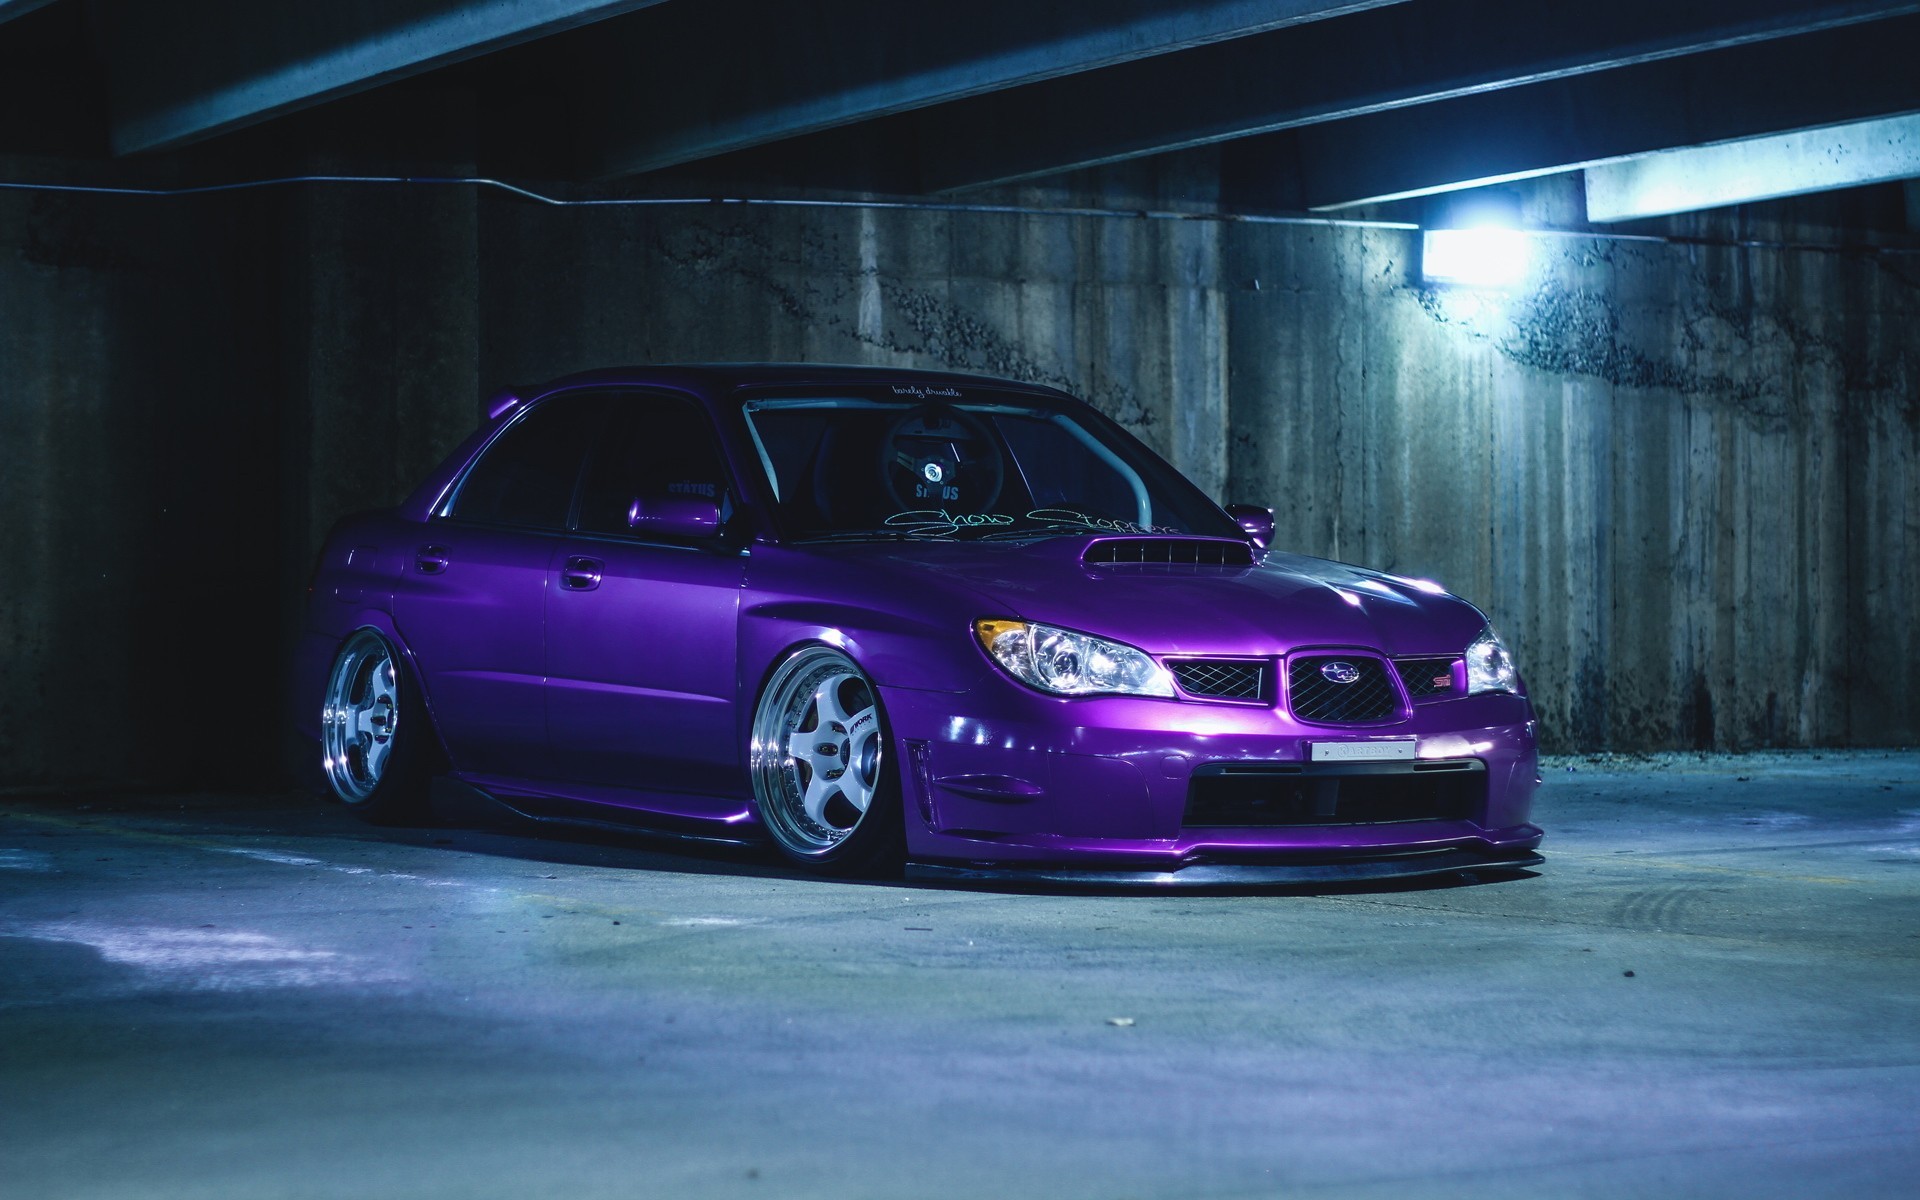 Free photo Purple Subaru in an underground parking garage.